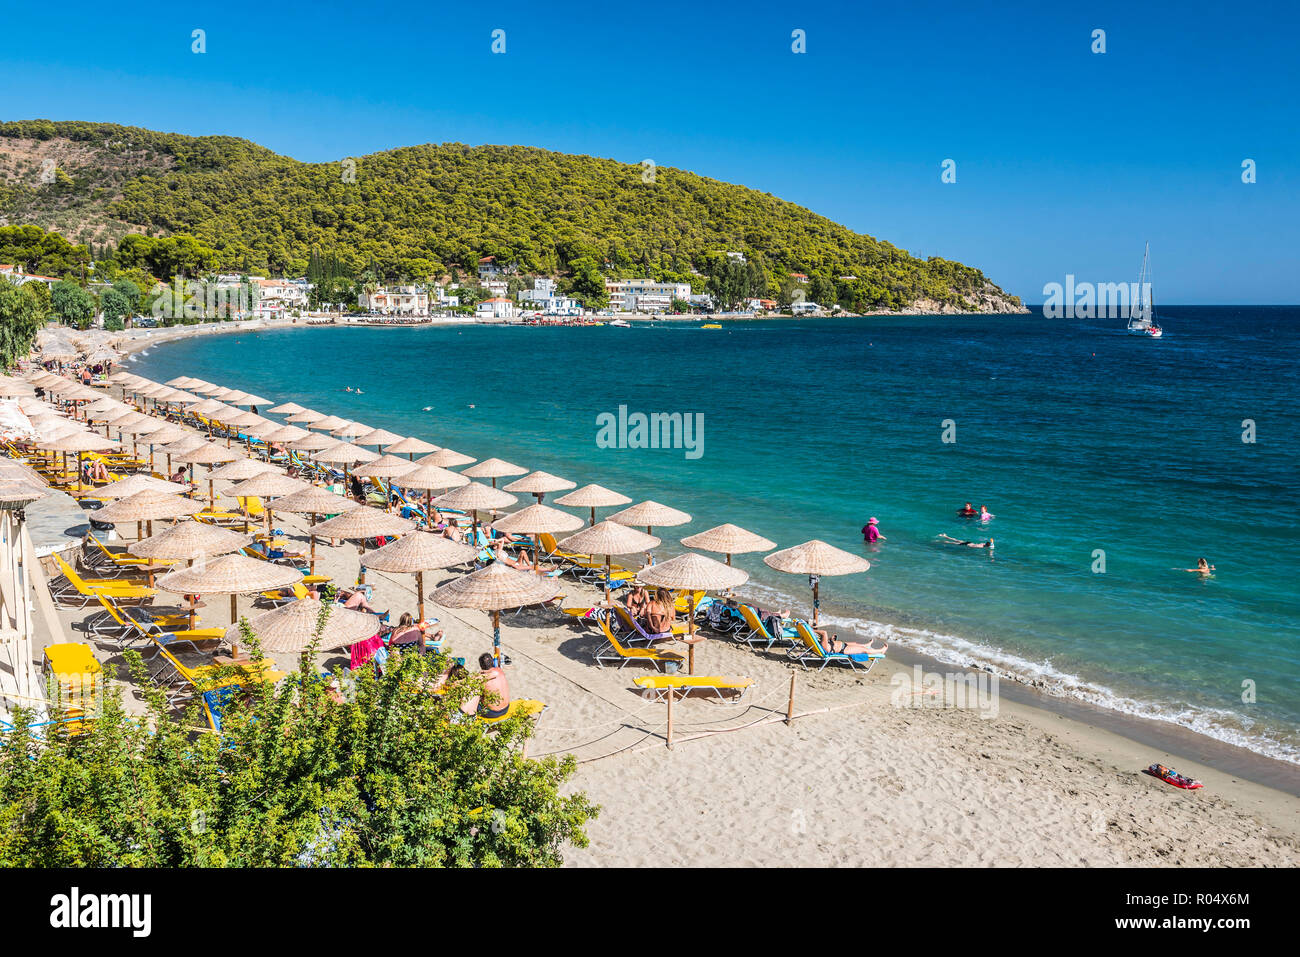 Plage sur l'île de Poros, l'île du golfe Saronique, côte de la mer Egée, les îles grecques, Grèce, Europe Banque D'Images